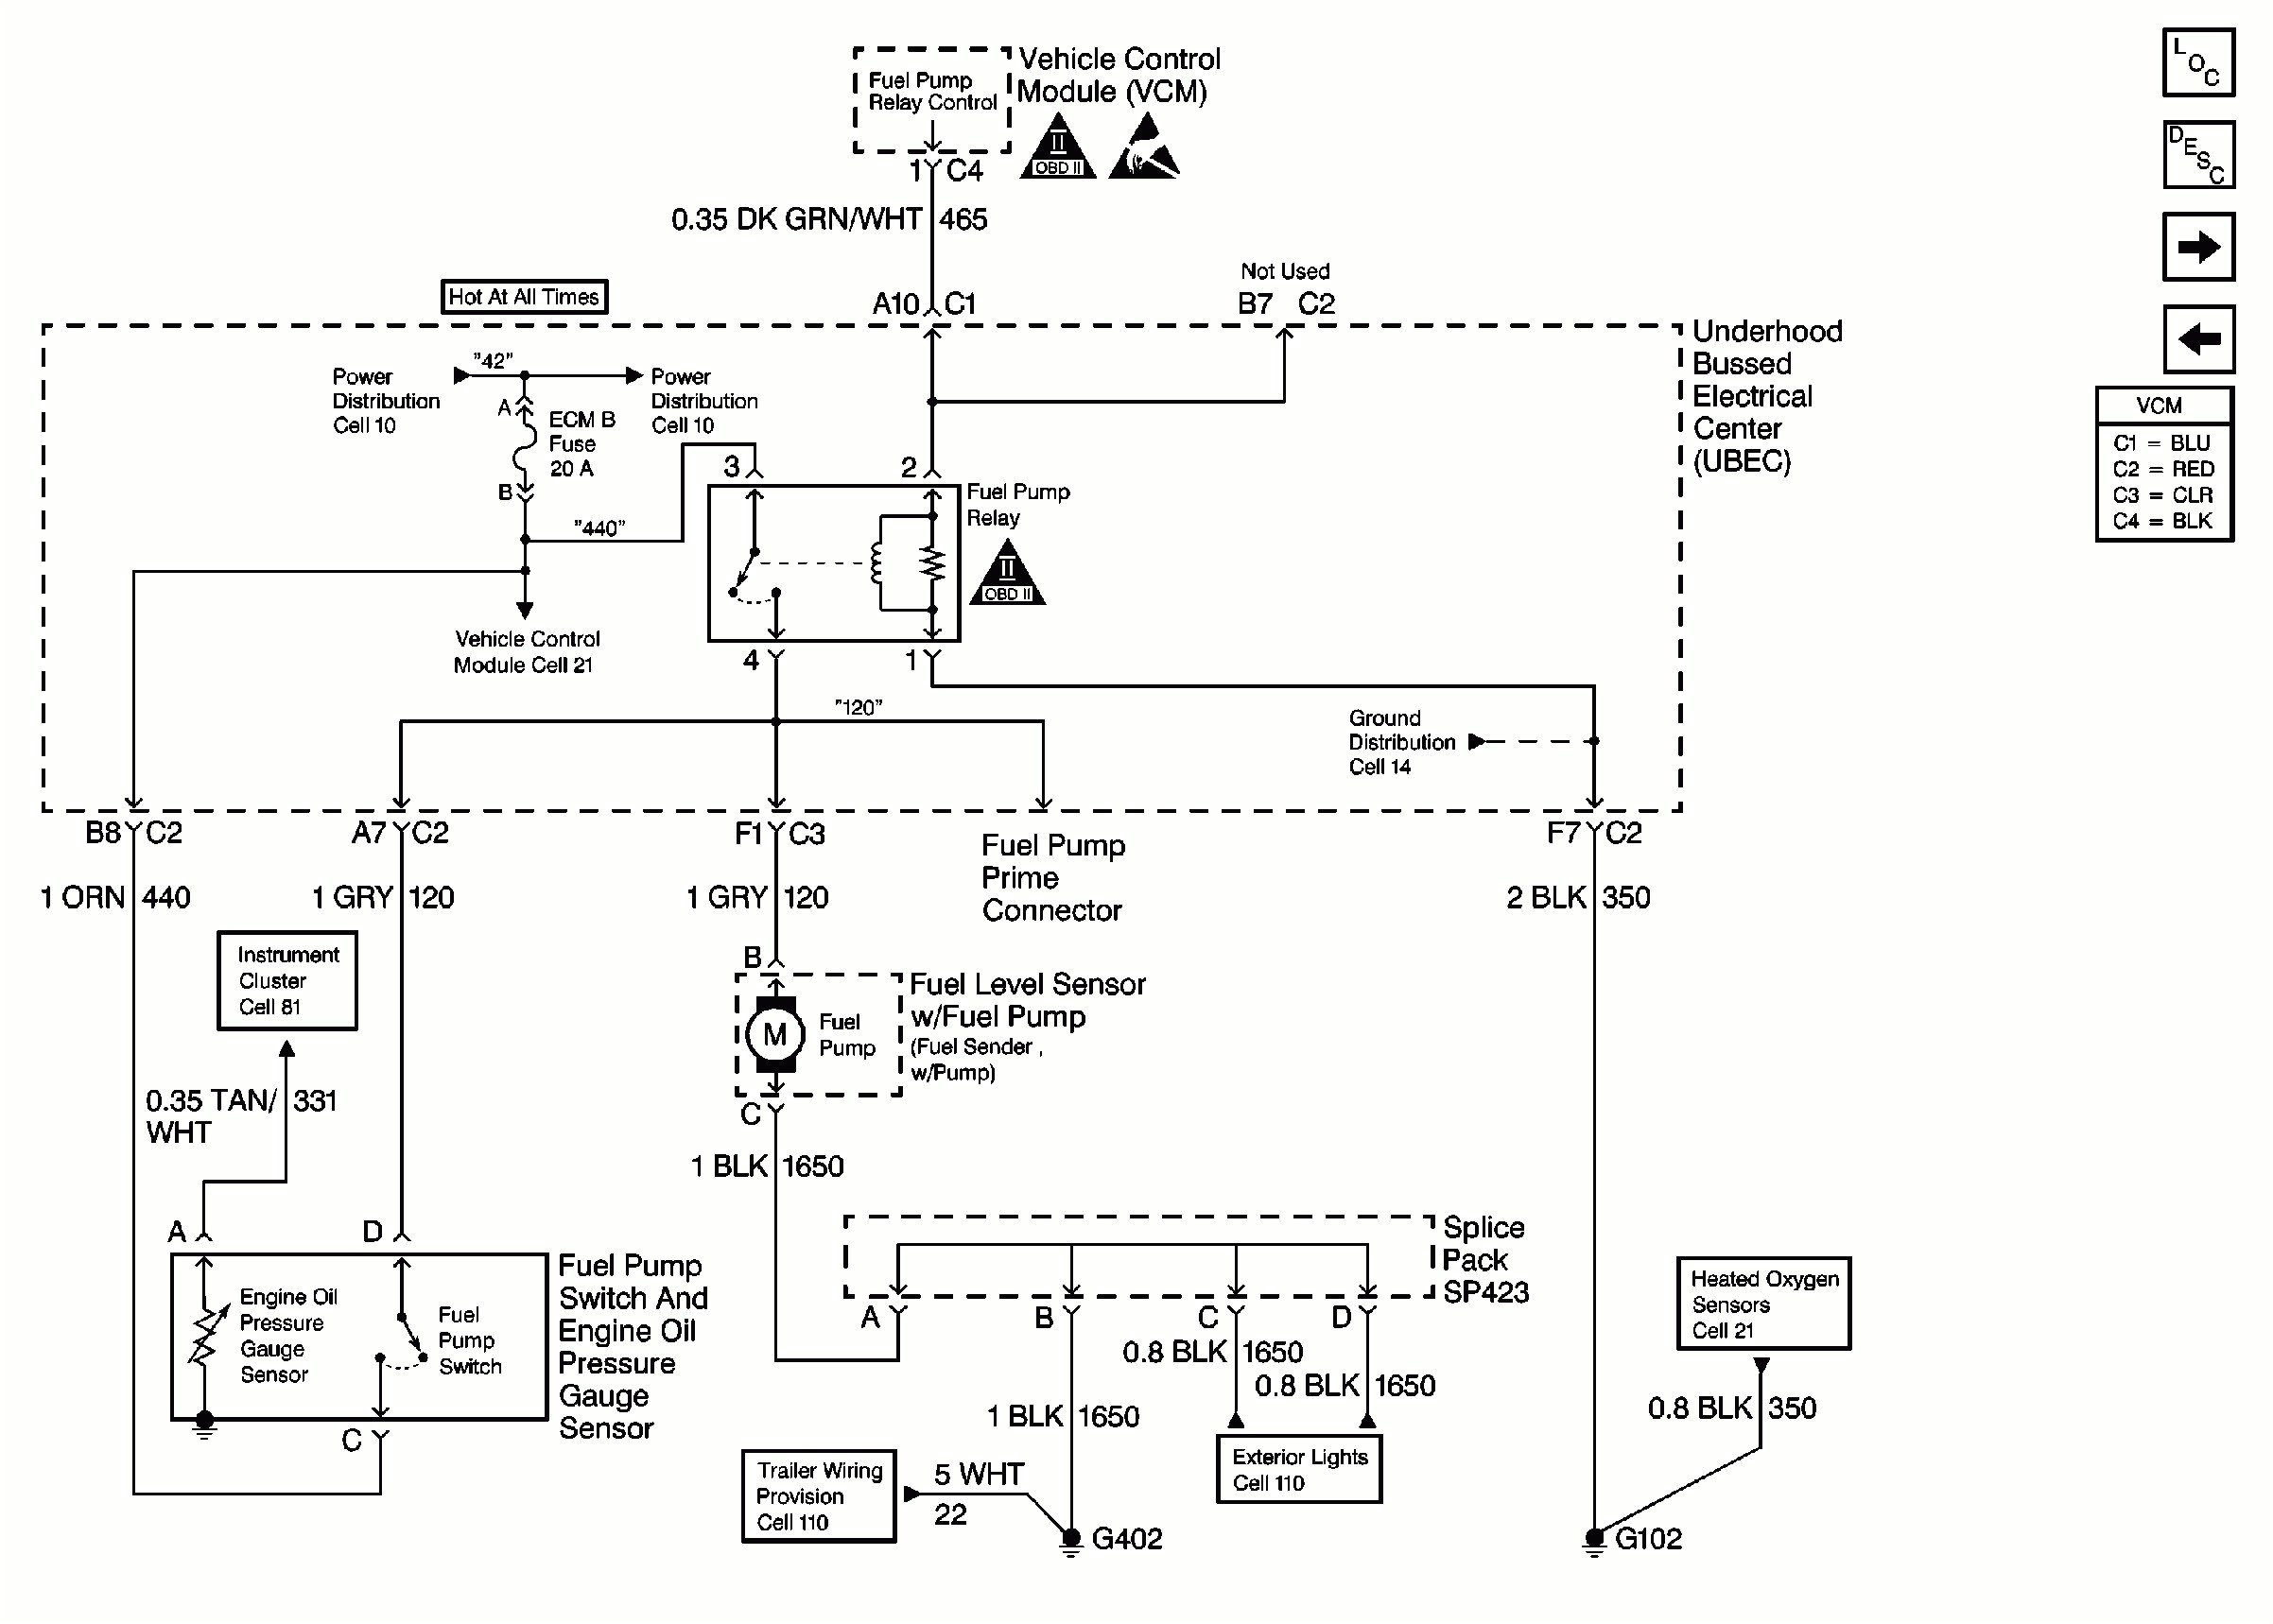 1989 chevy truck fuel pump wiring diagram wiring diagram technic 1989 toyota pickup fuel pump wiring